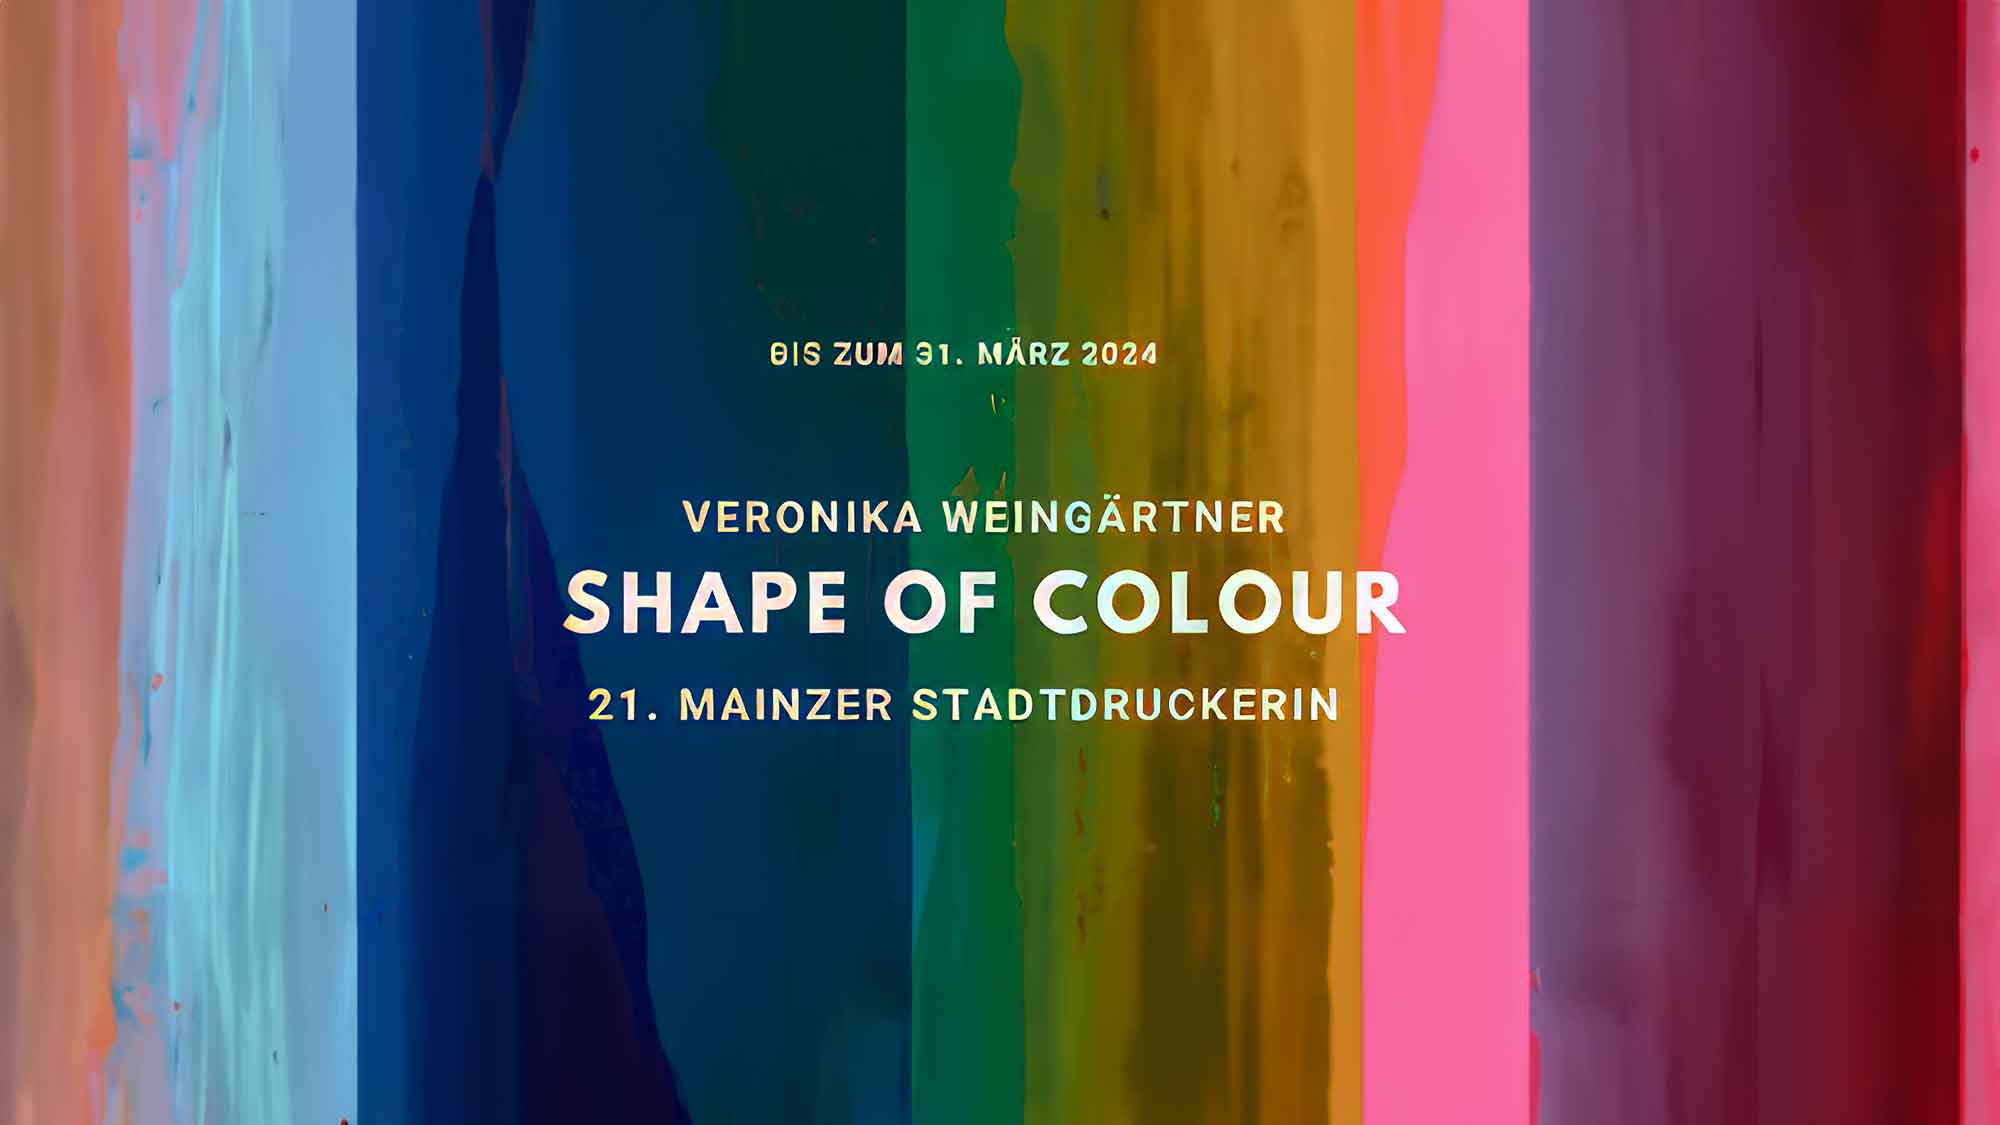 Sonderausstellung »Veronika Weingärtner: shape of colour – 21. Mainzer Stadtdruckerin« bis 31. März 2024 verlängert